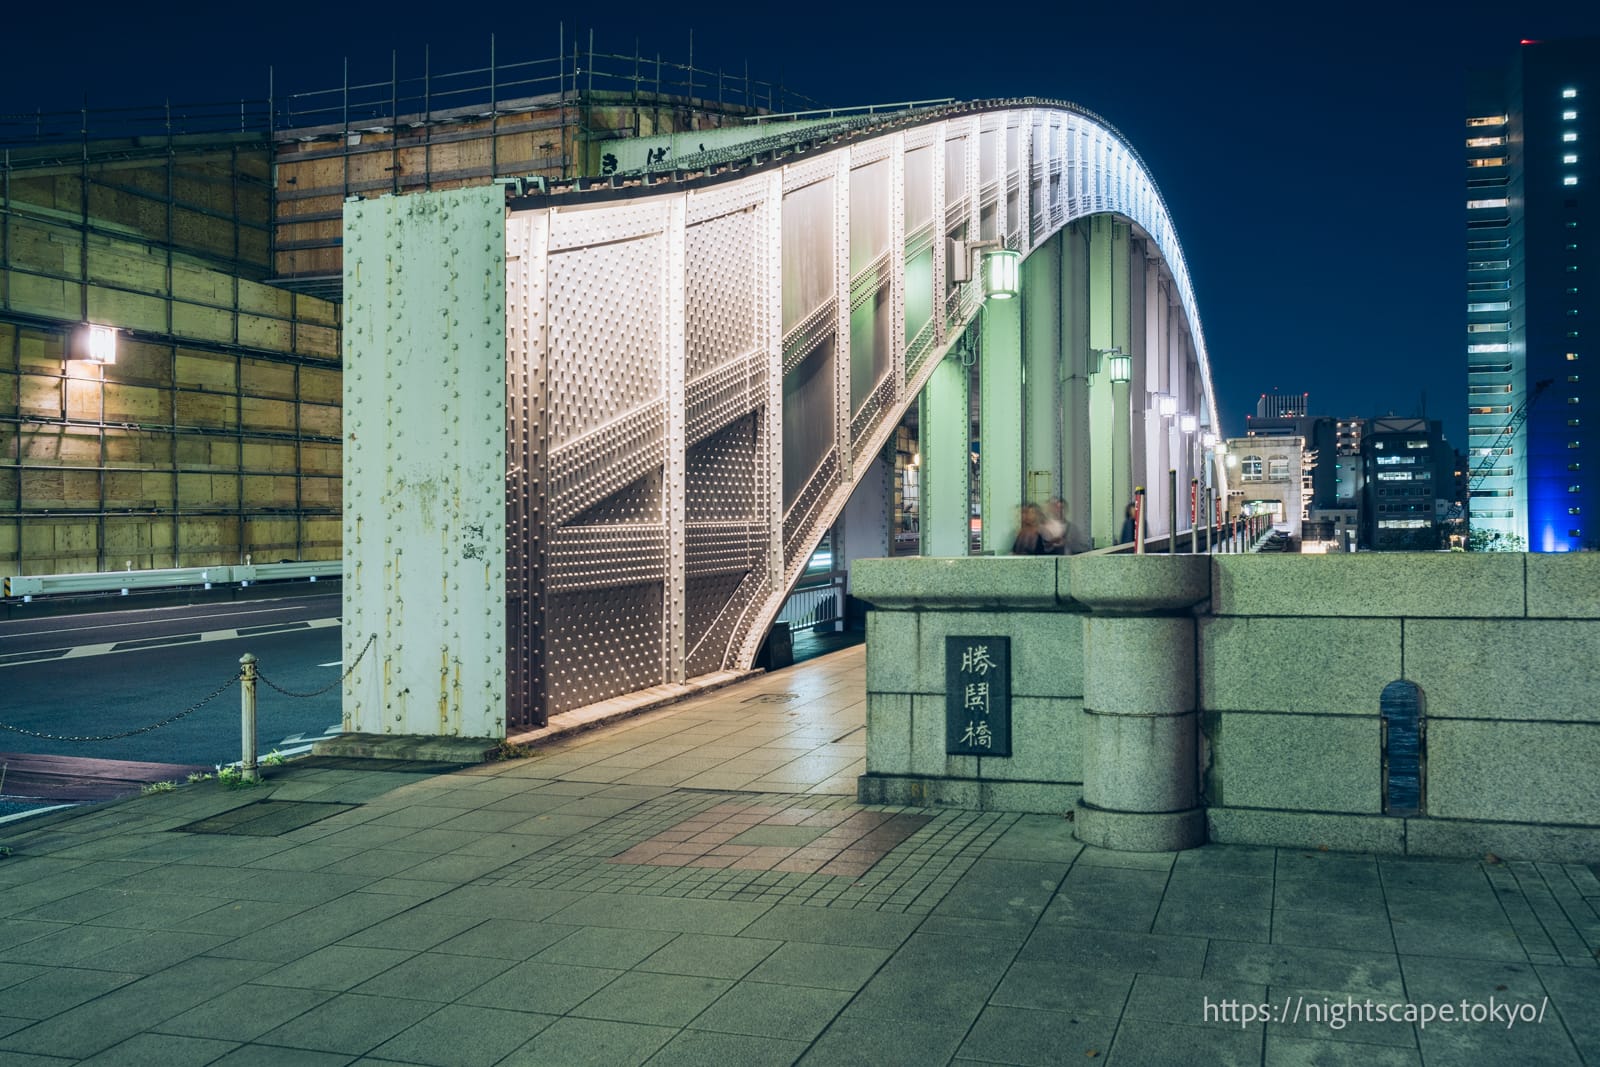 Kachidoki Bridge illuminated.